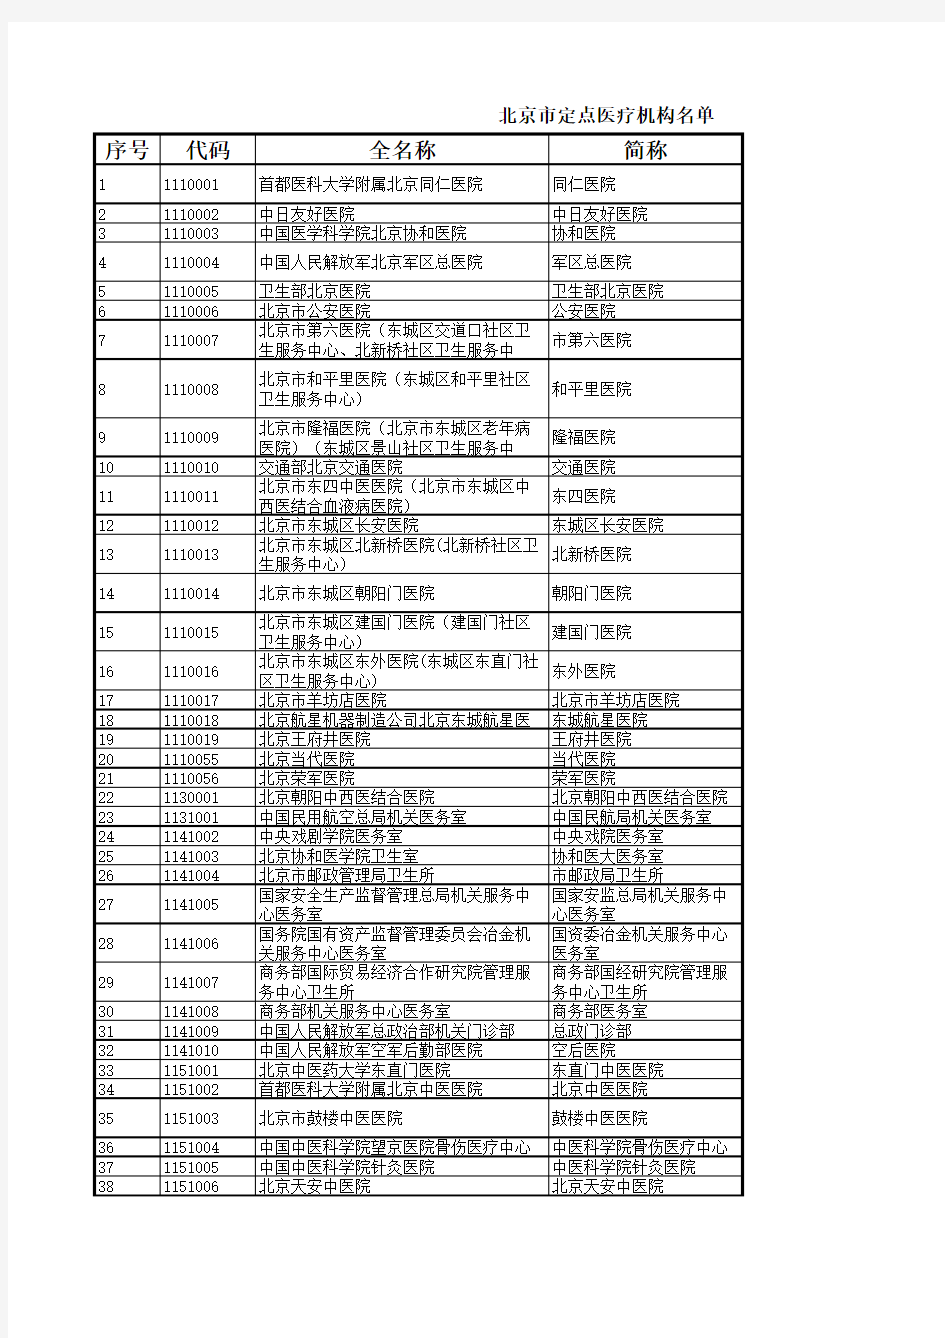 北京市定点医疗机构名单-共2016家包括代码及地址